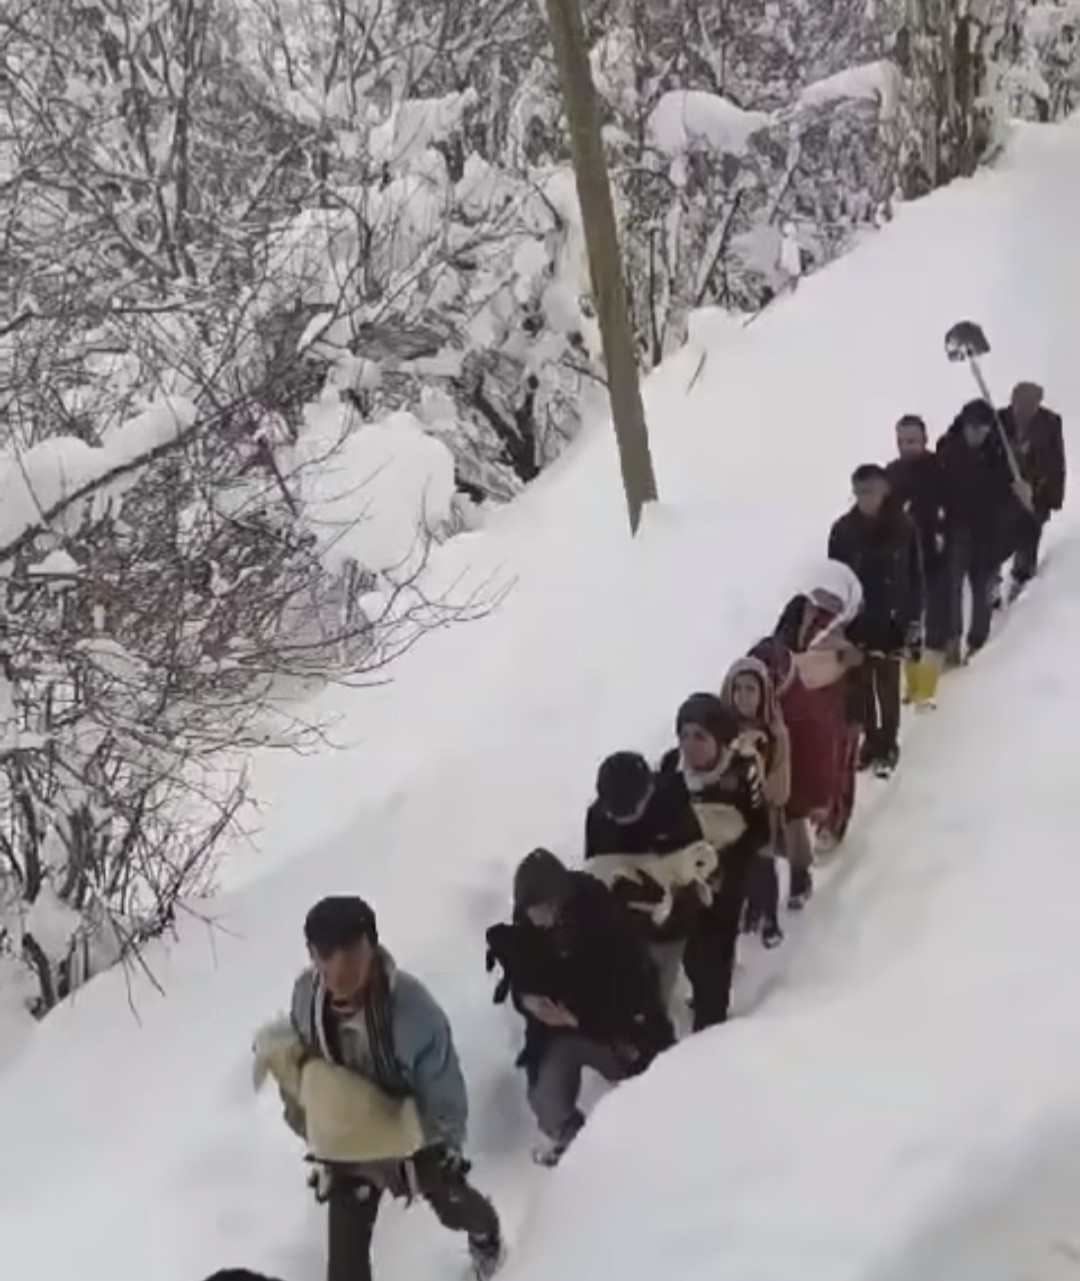 Vatandaşlar sürü ile birlikte kuzuları kucaklarında taşıdılar